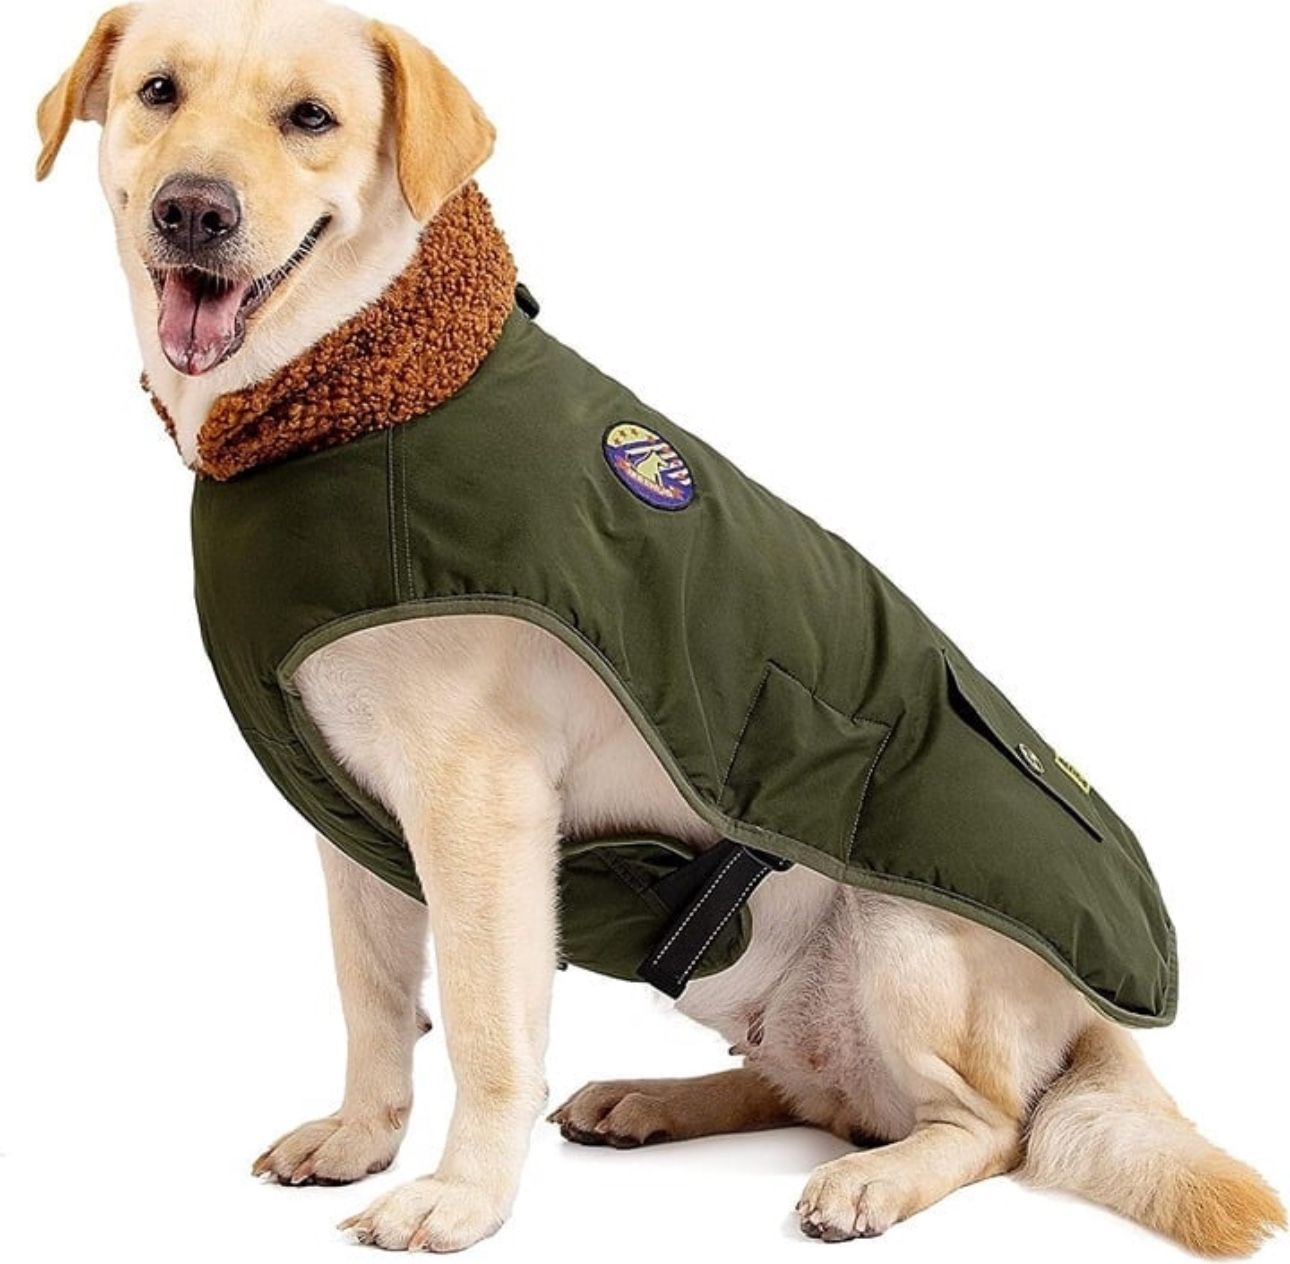 IREENUO SDog Coat, SIZE XL Waterproof Dog Jacket for Medium Large Dogs